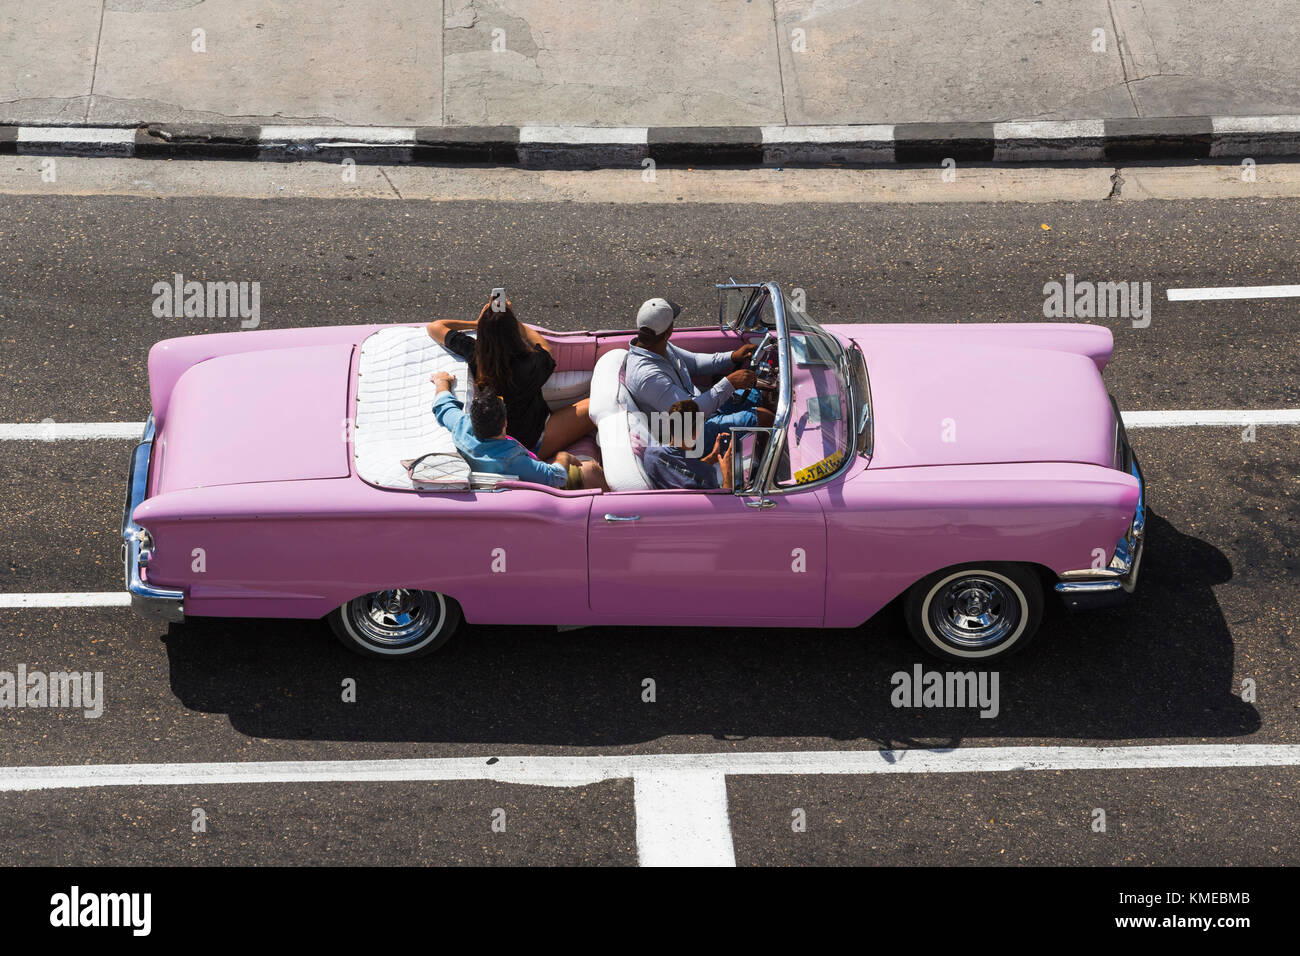 Voiture américaine classique décapotable rose avec chauffeur et touristes cubains, la Havane, Cuba Banque D'Images